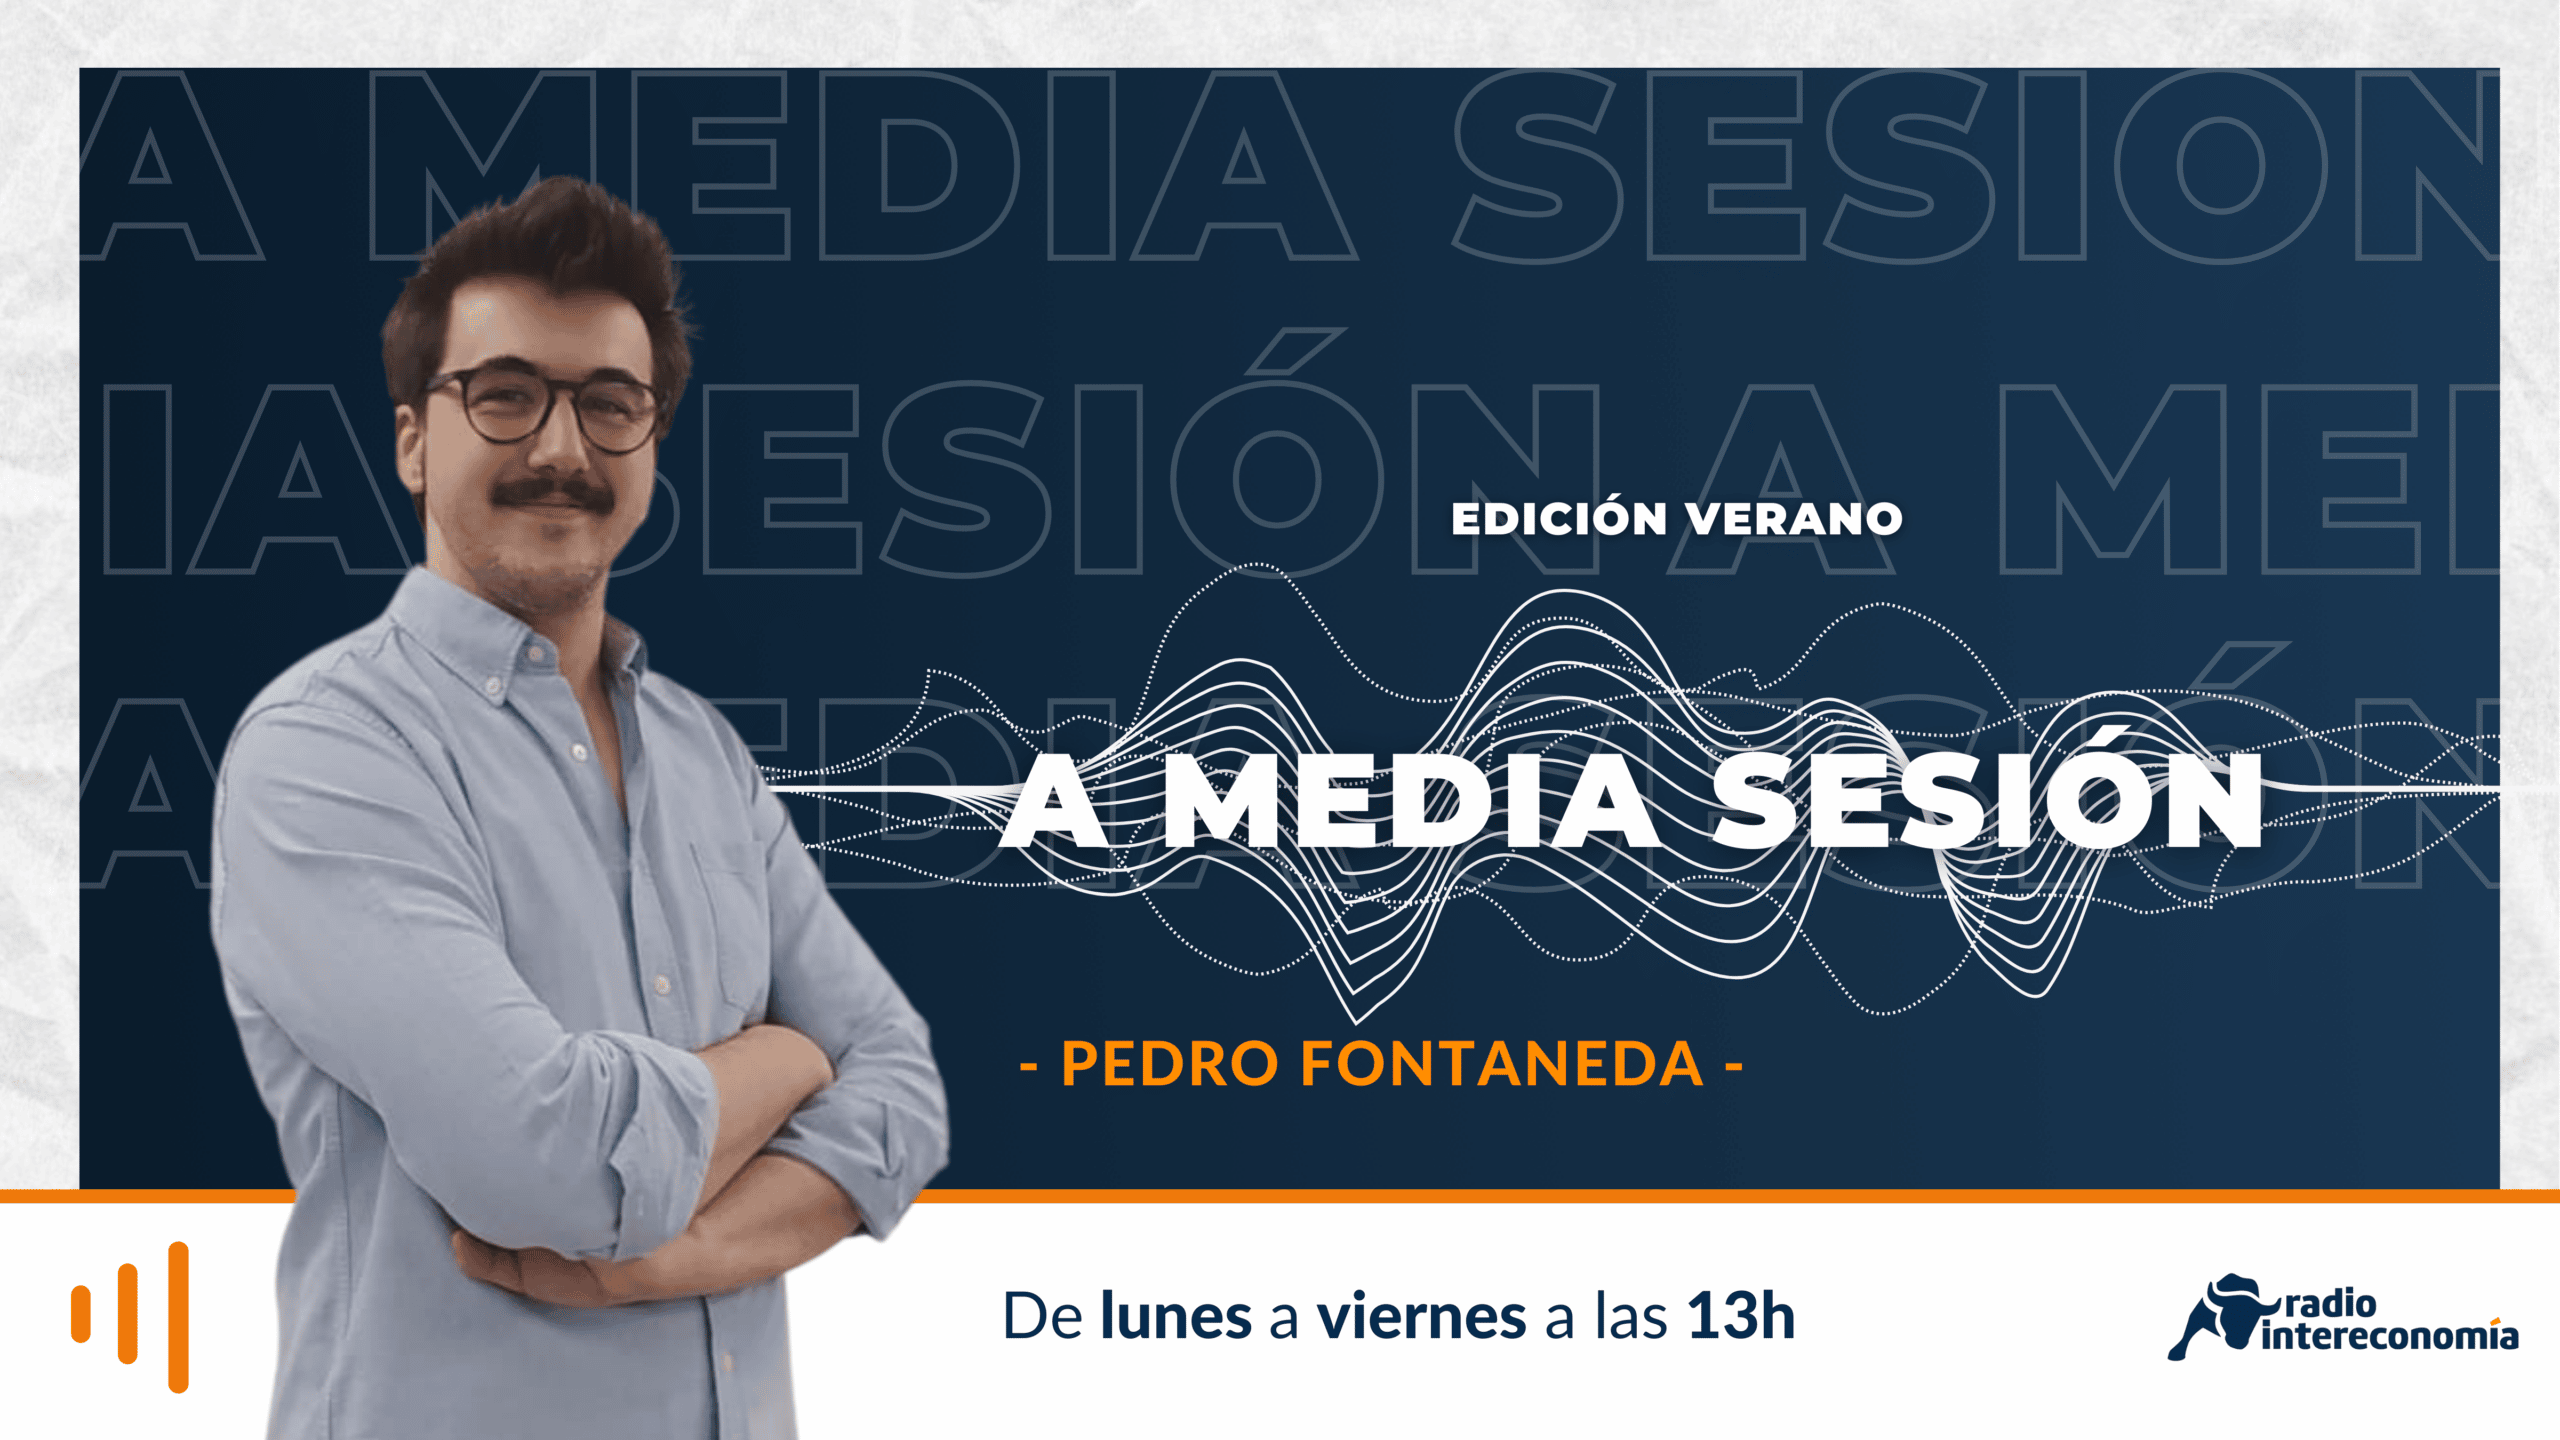 A Media Sesión -edición verano- 24/08. Análisis con Luis García Langa. DXC Iberia Codes